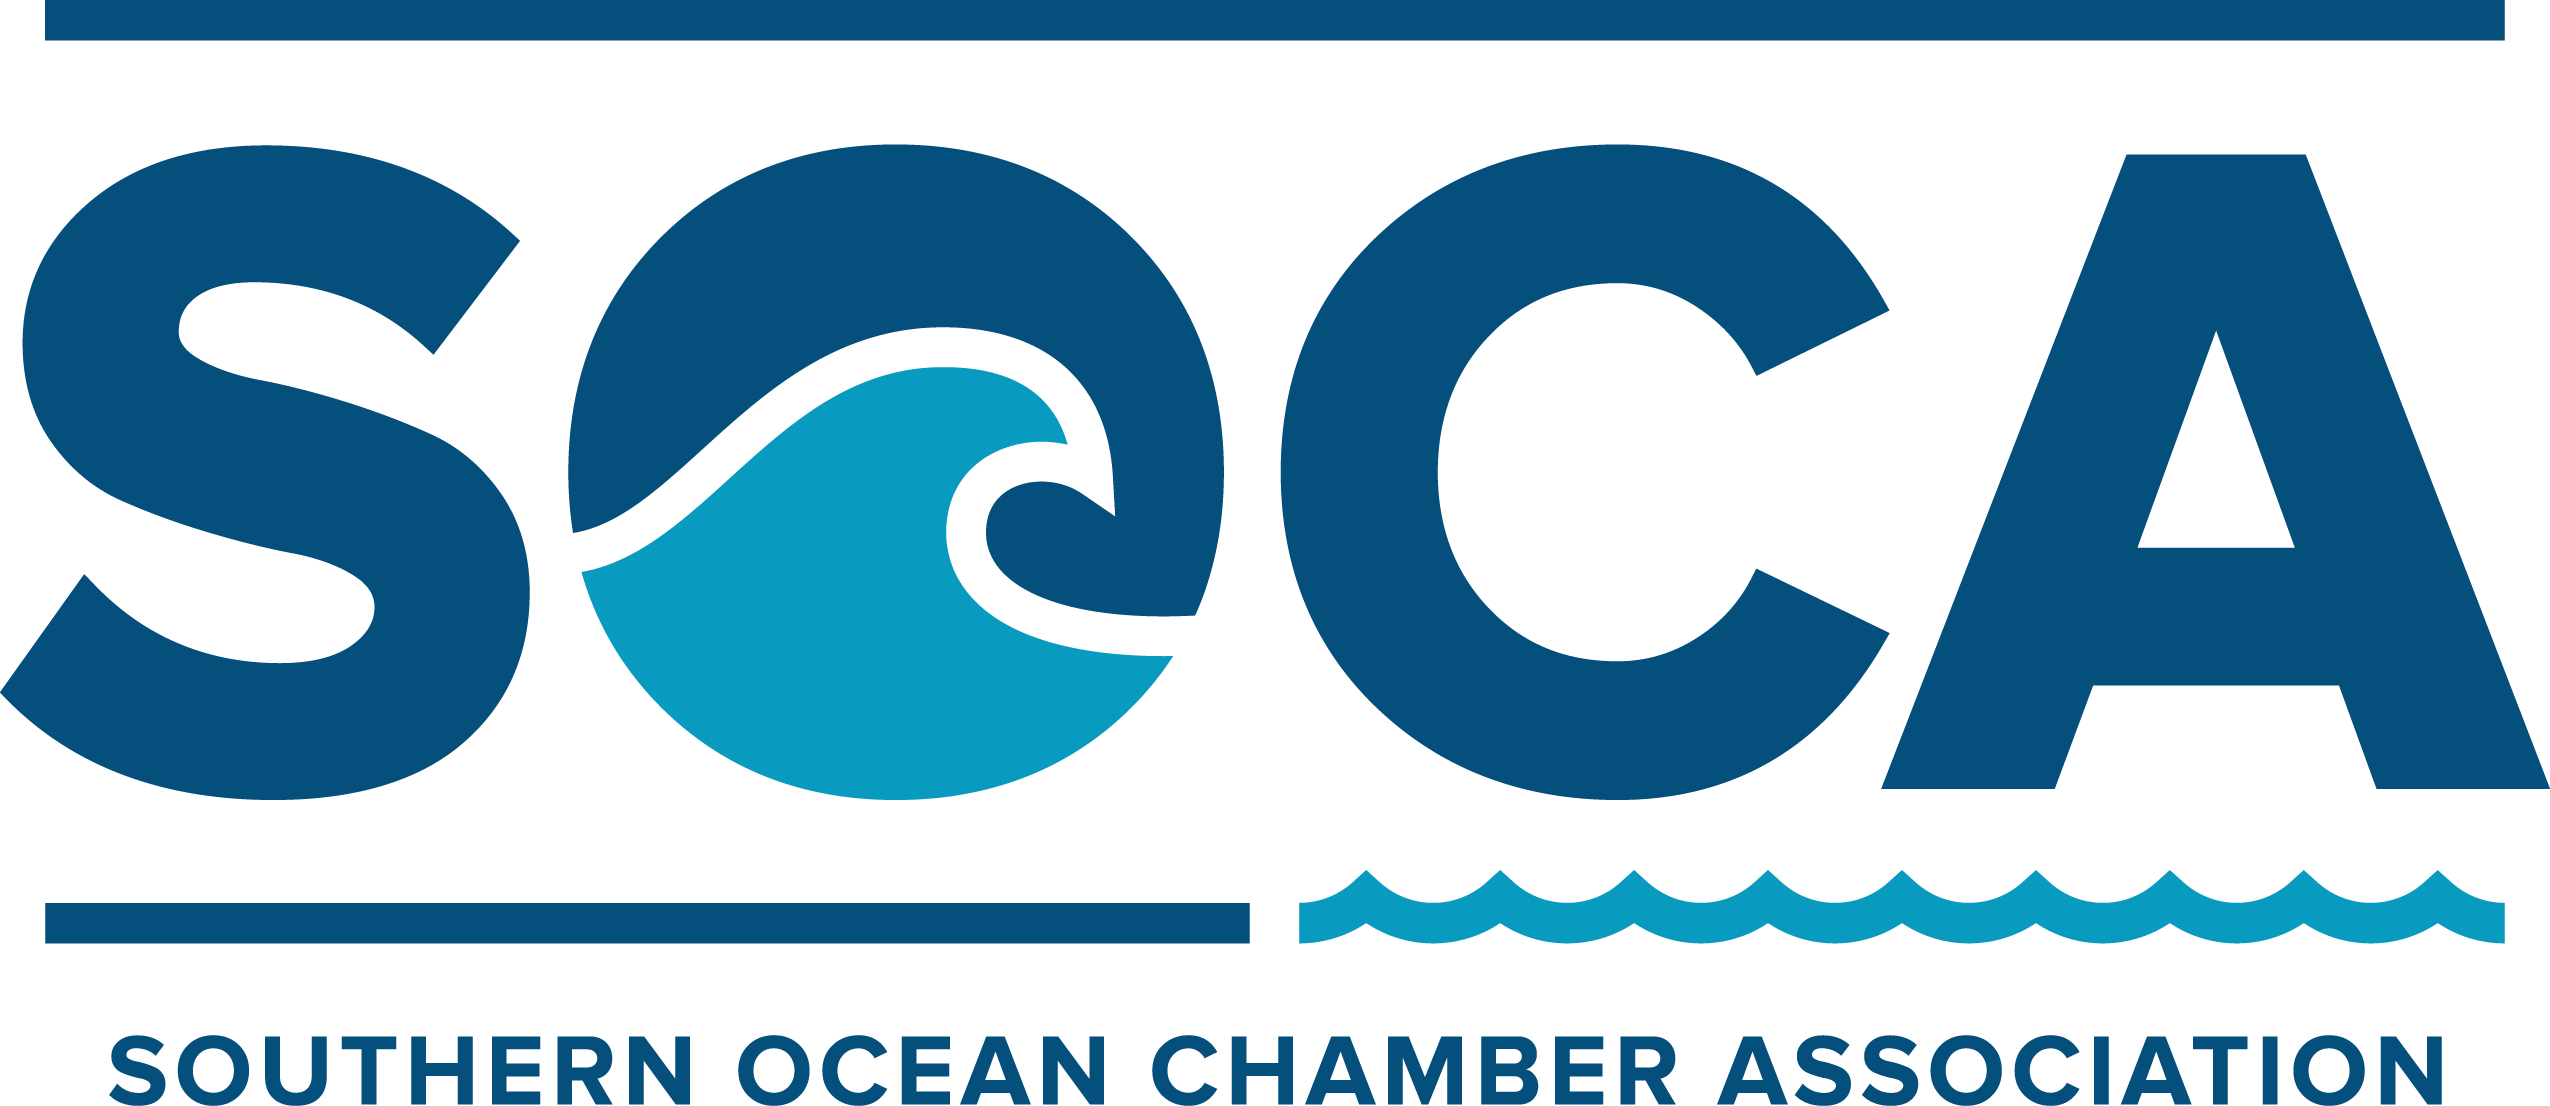 Southern Ocean Chamber Association